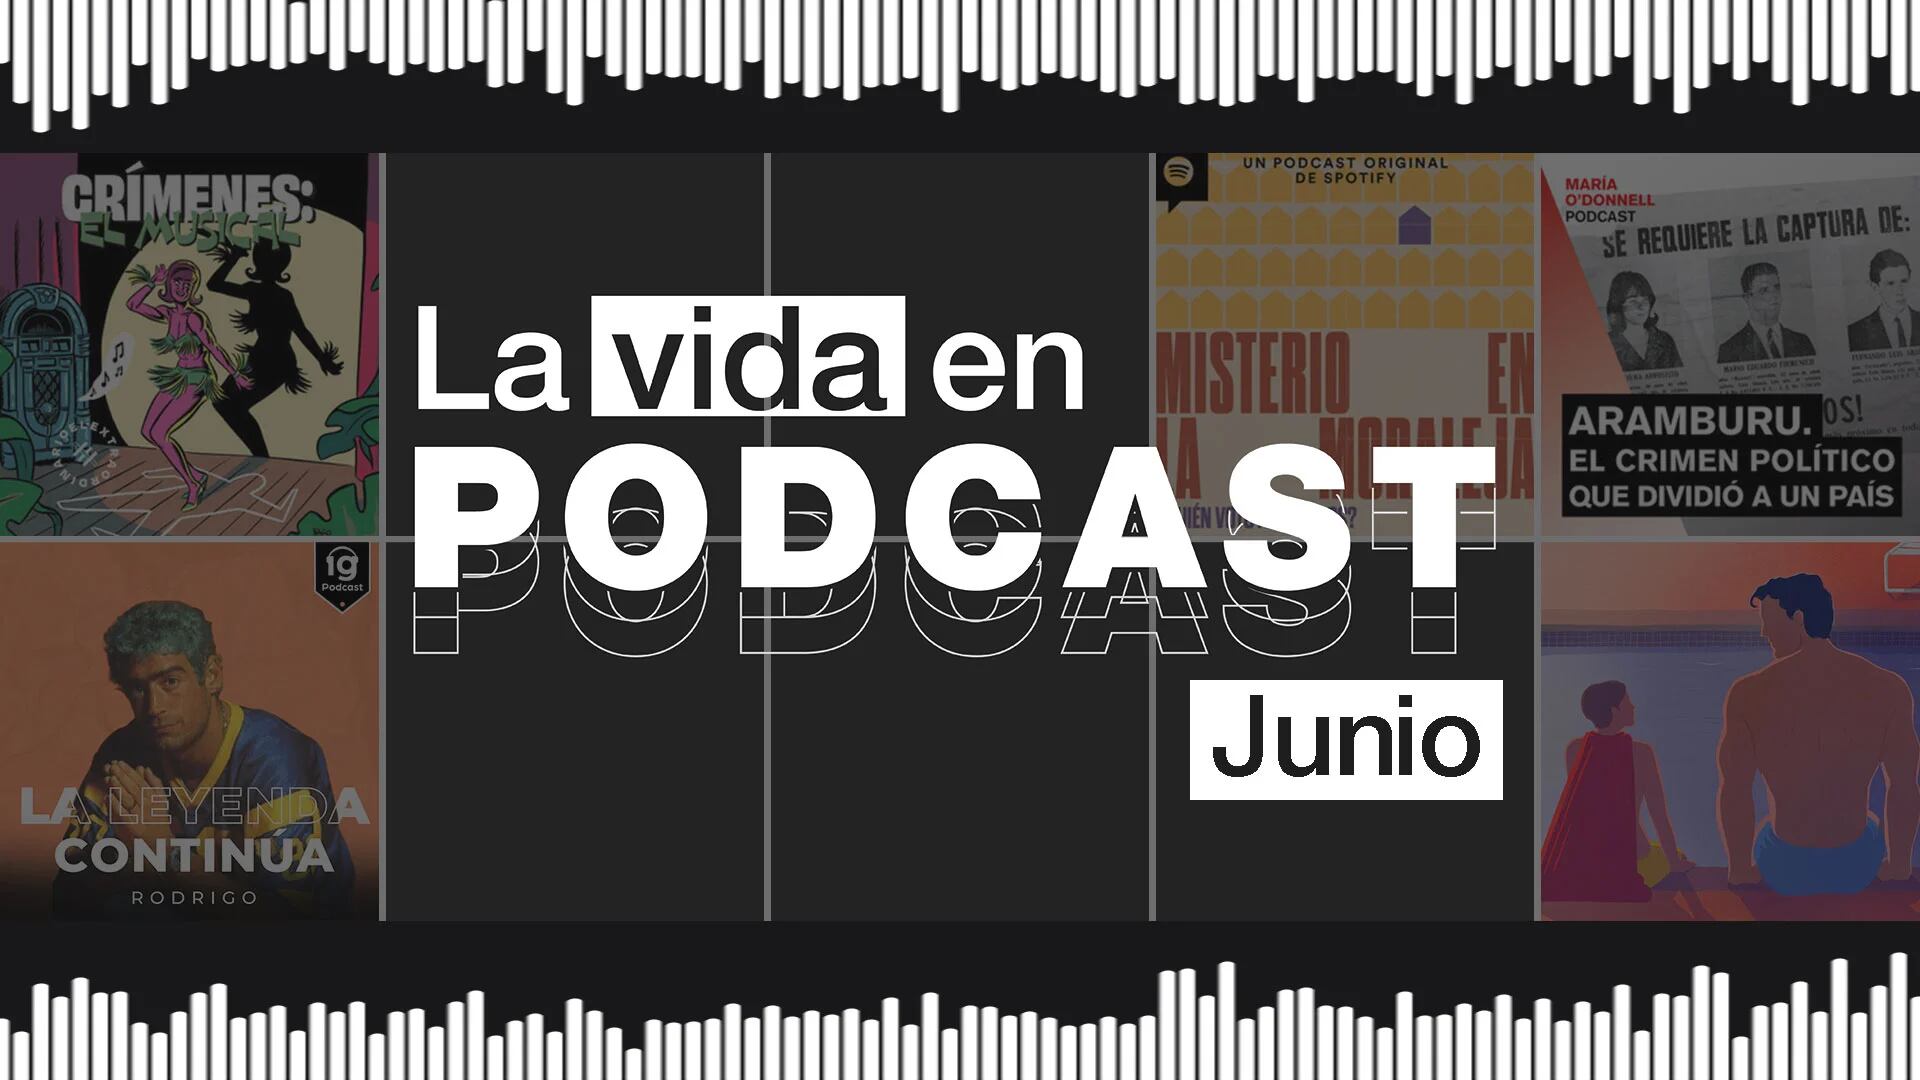 La vida en podcast: los recomendados de junio